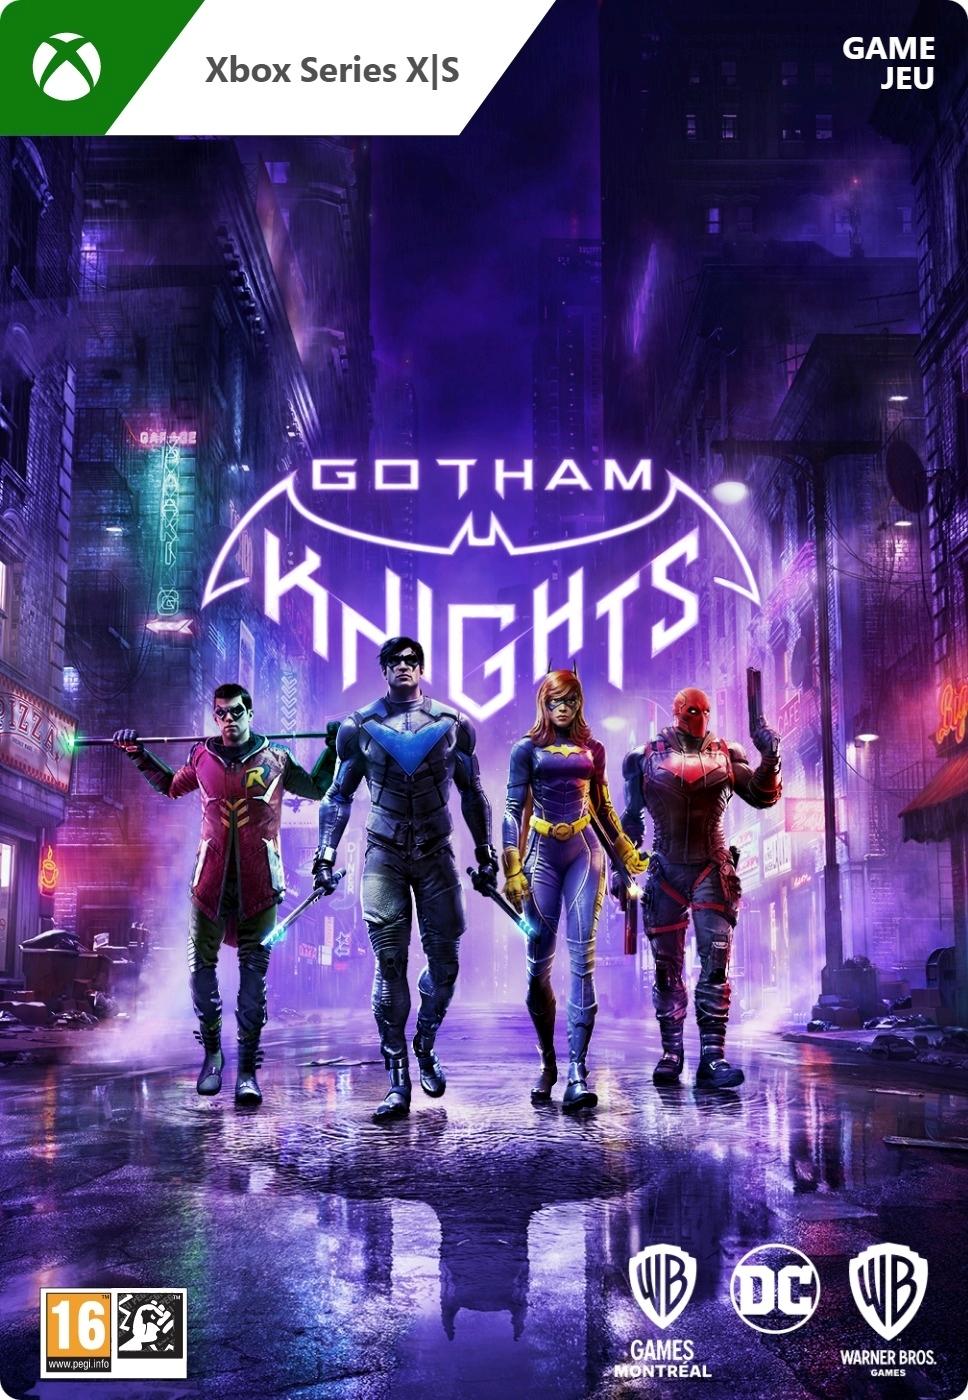 Gotham Knights - Xbox Series X - Game | G3Q-01441 (2d3f78f6-ea34-0440-8592-9112caafea99)